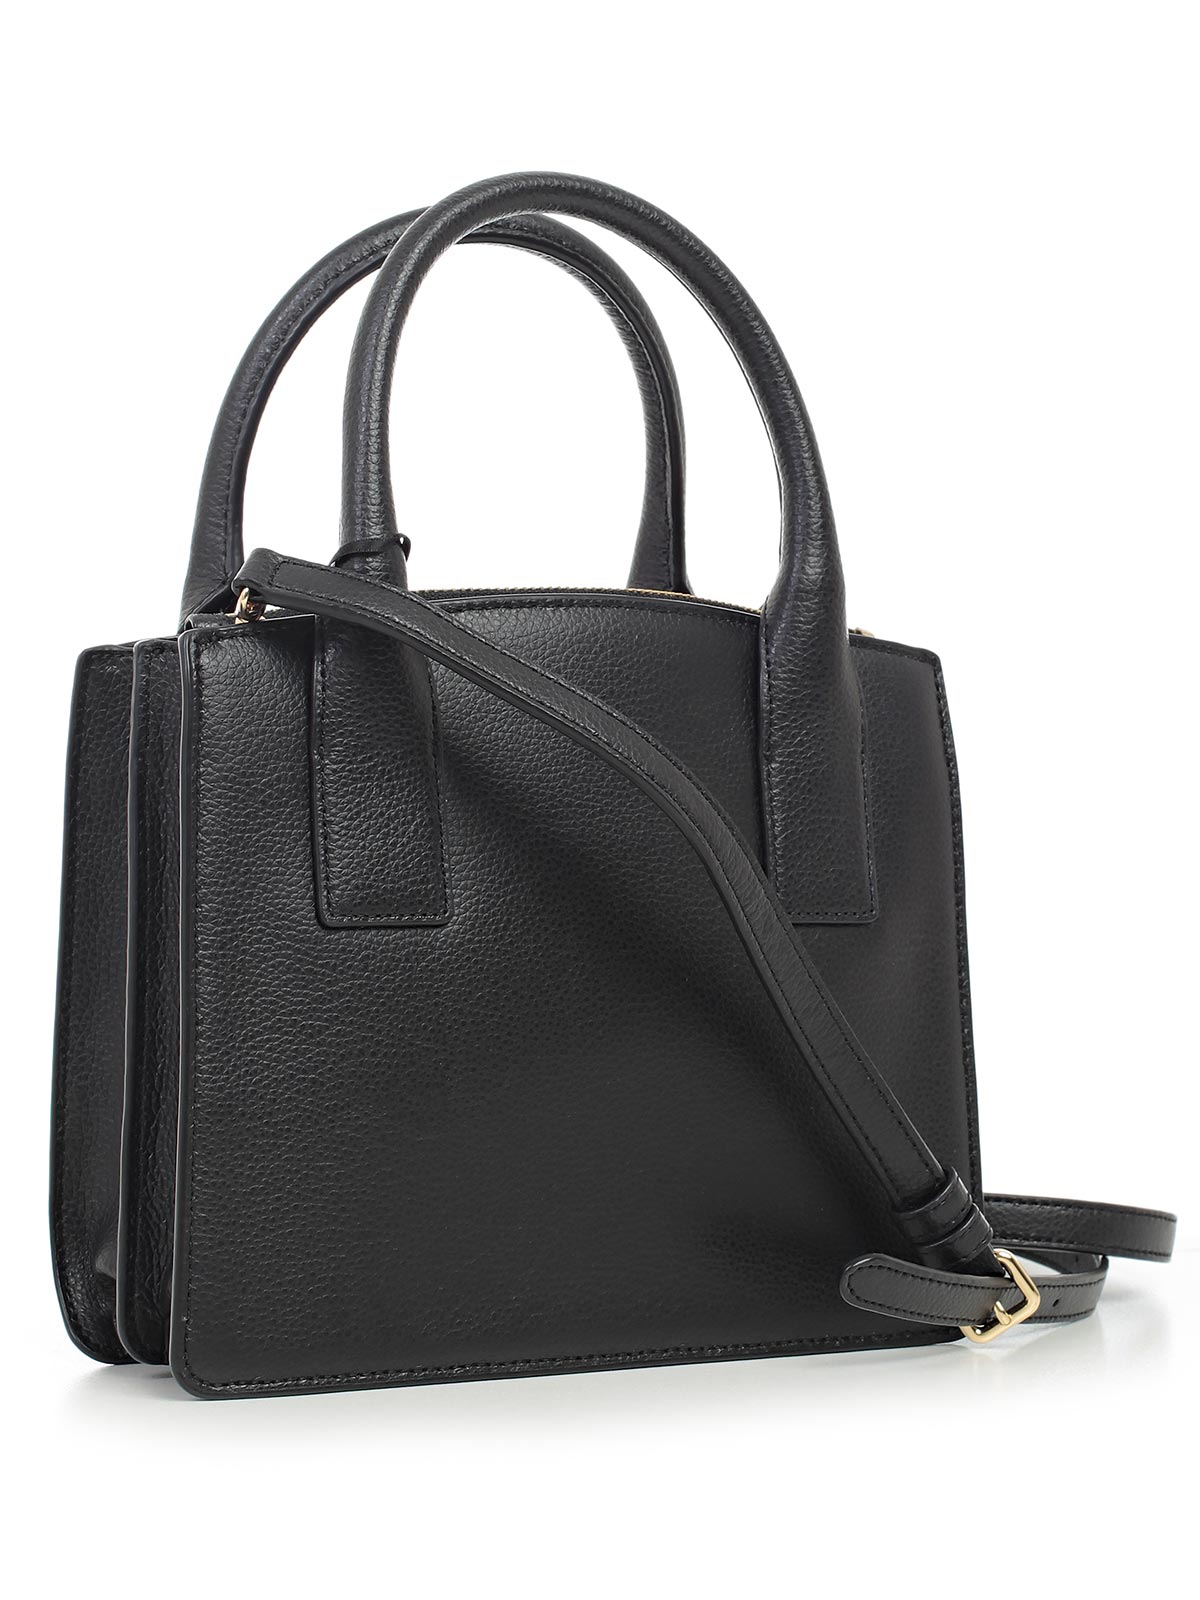 Dkny Handbags Sale Redfin | semashow.com